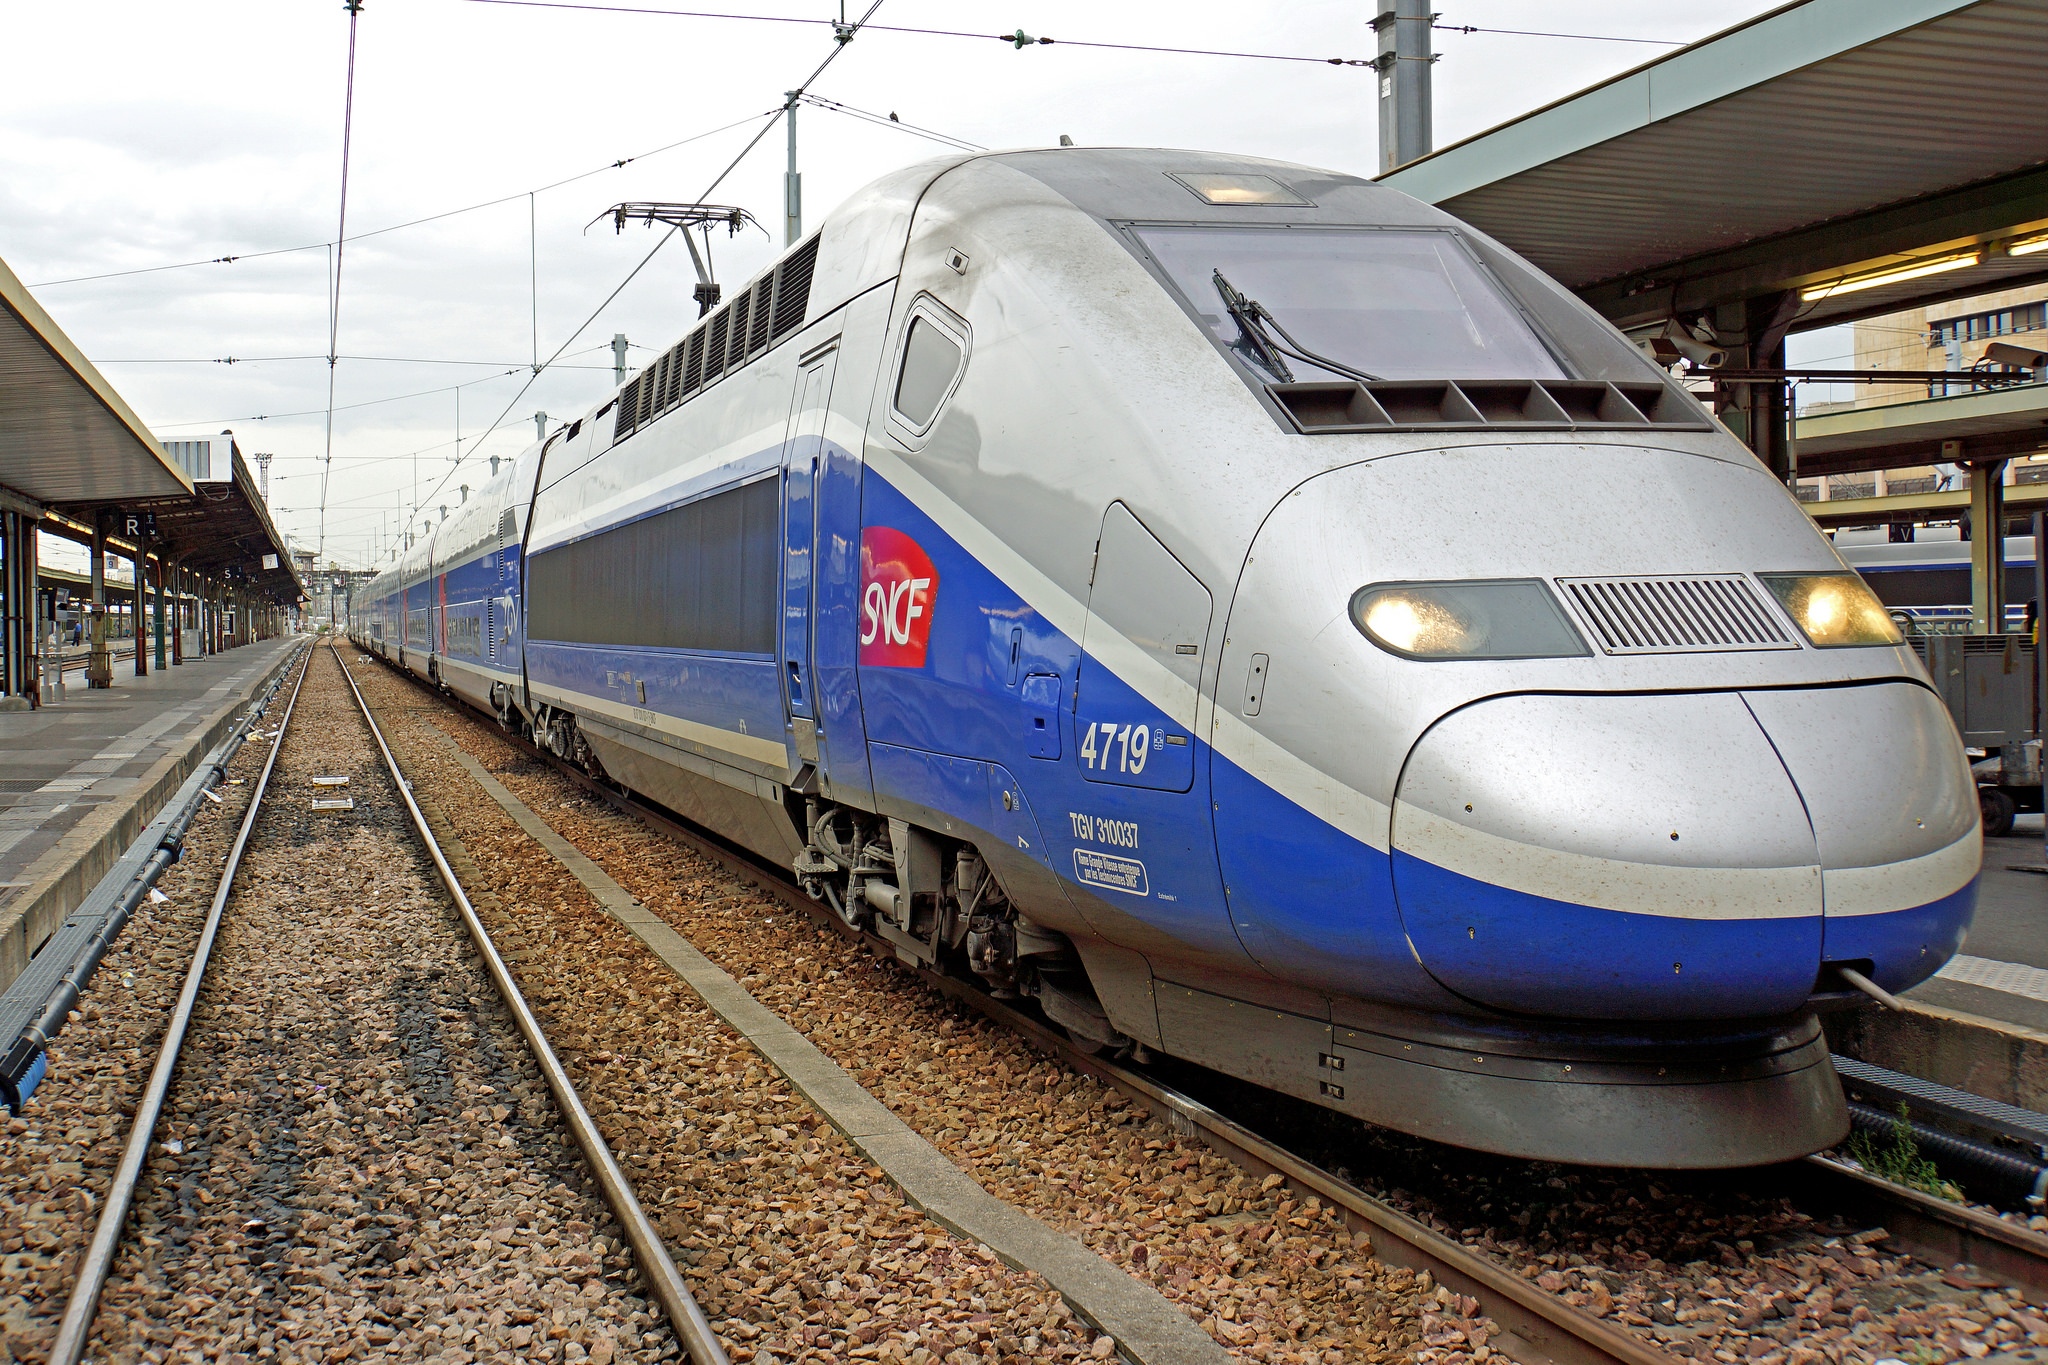 Γαλλία: Έπιασαν ύποπτους τρομοκράτες μέσα σε τρένο